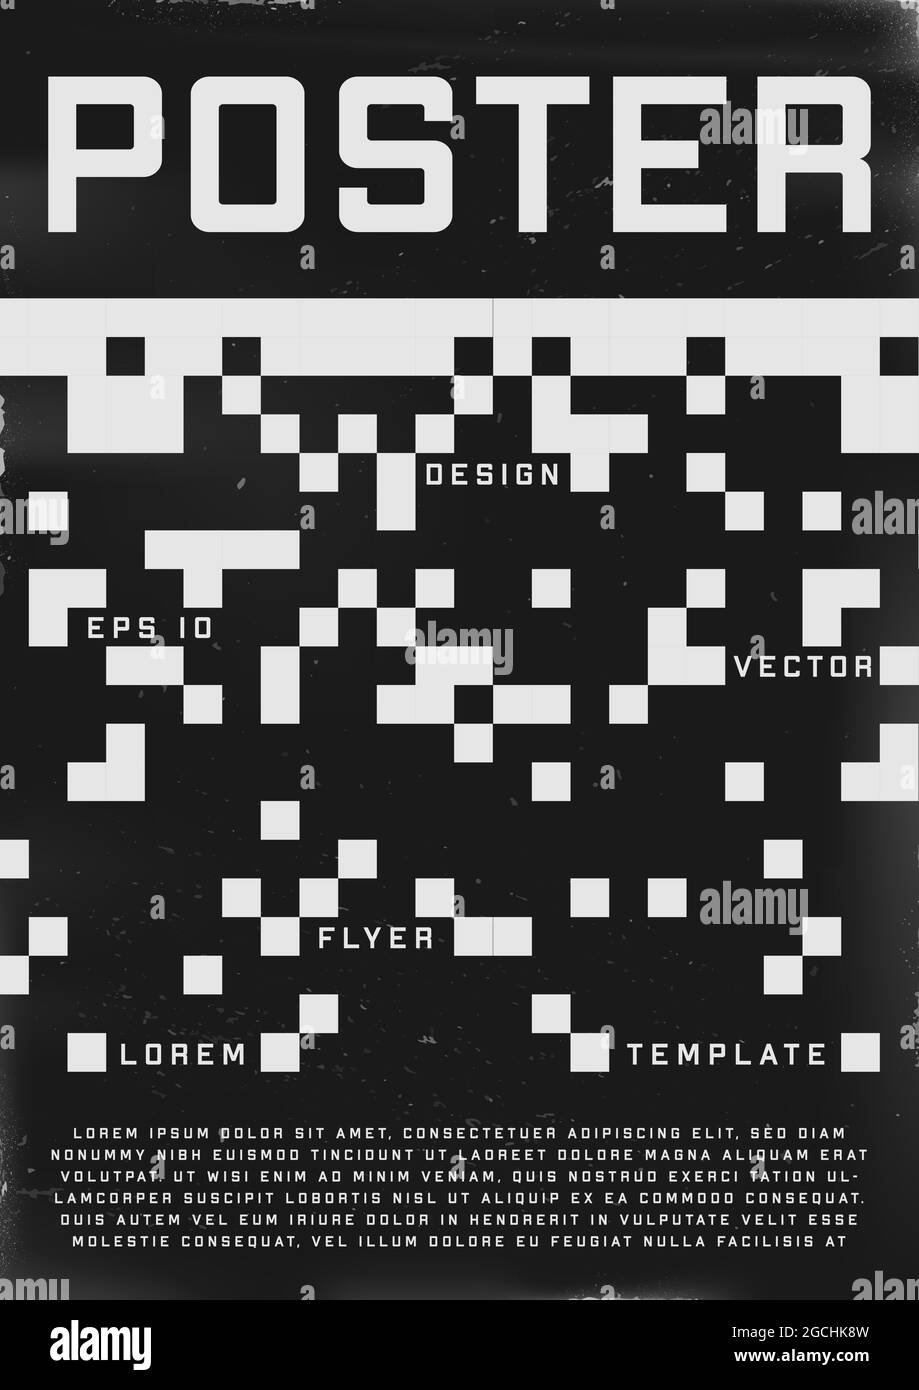 Poster dal design retrovuturistico. Poster in stile cyberpunk 80s con motivo a 8 bit pixel. Modello shabby graffiato flyer per il tuo design. Vettore Illustrazione Vettoriale